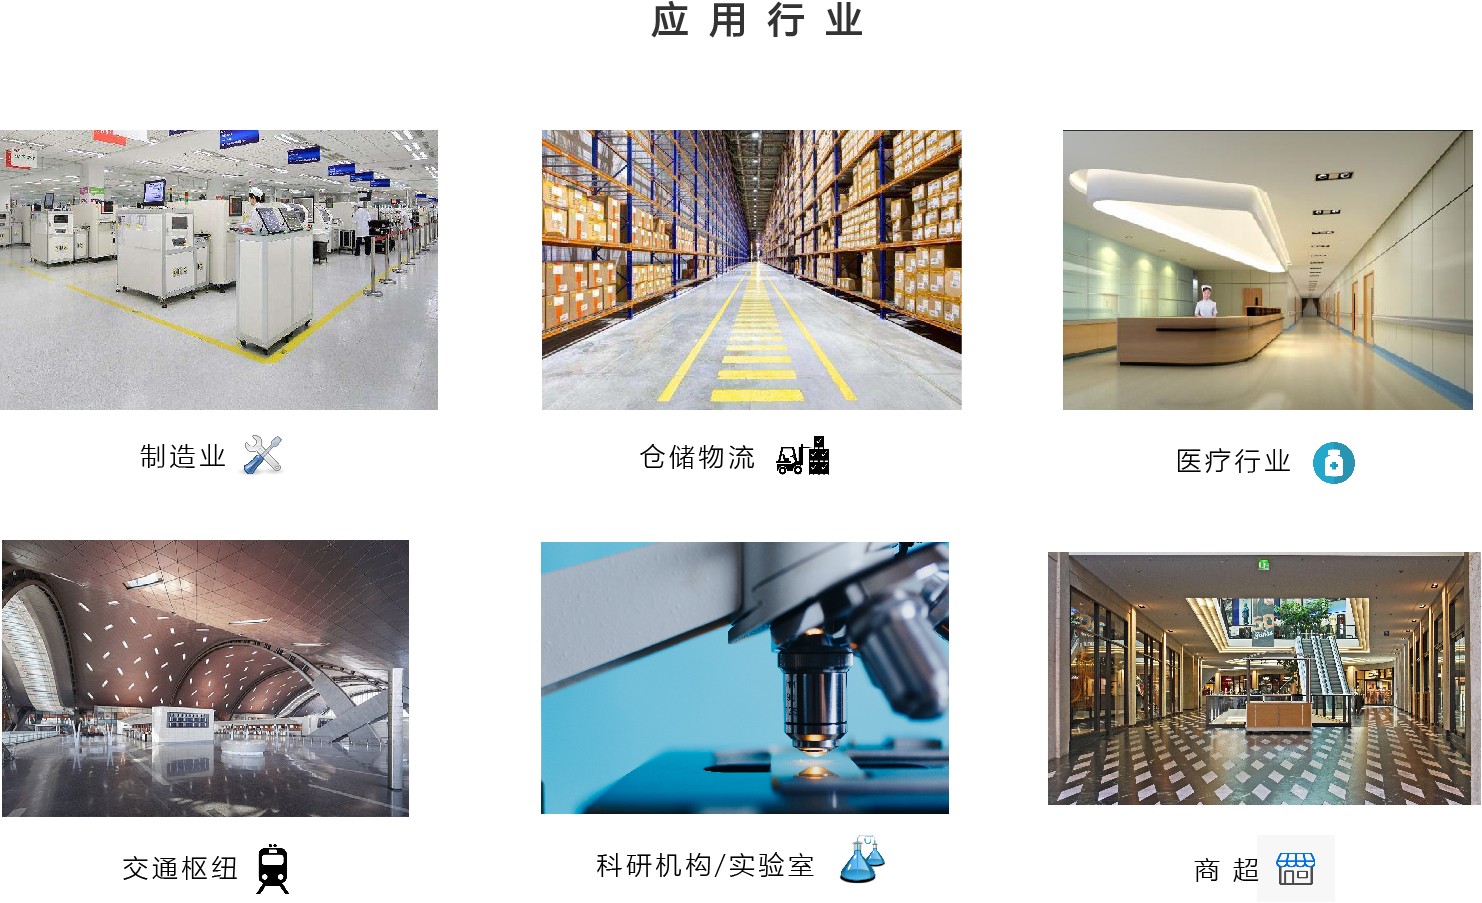 关于当前产品1382cm太阳在线玩游戏·(中国)官方网站的成功案例等相关图片